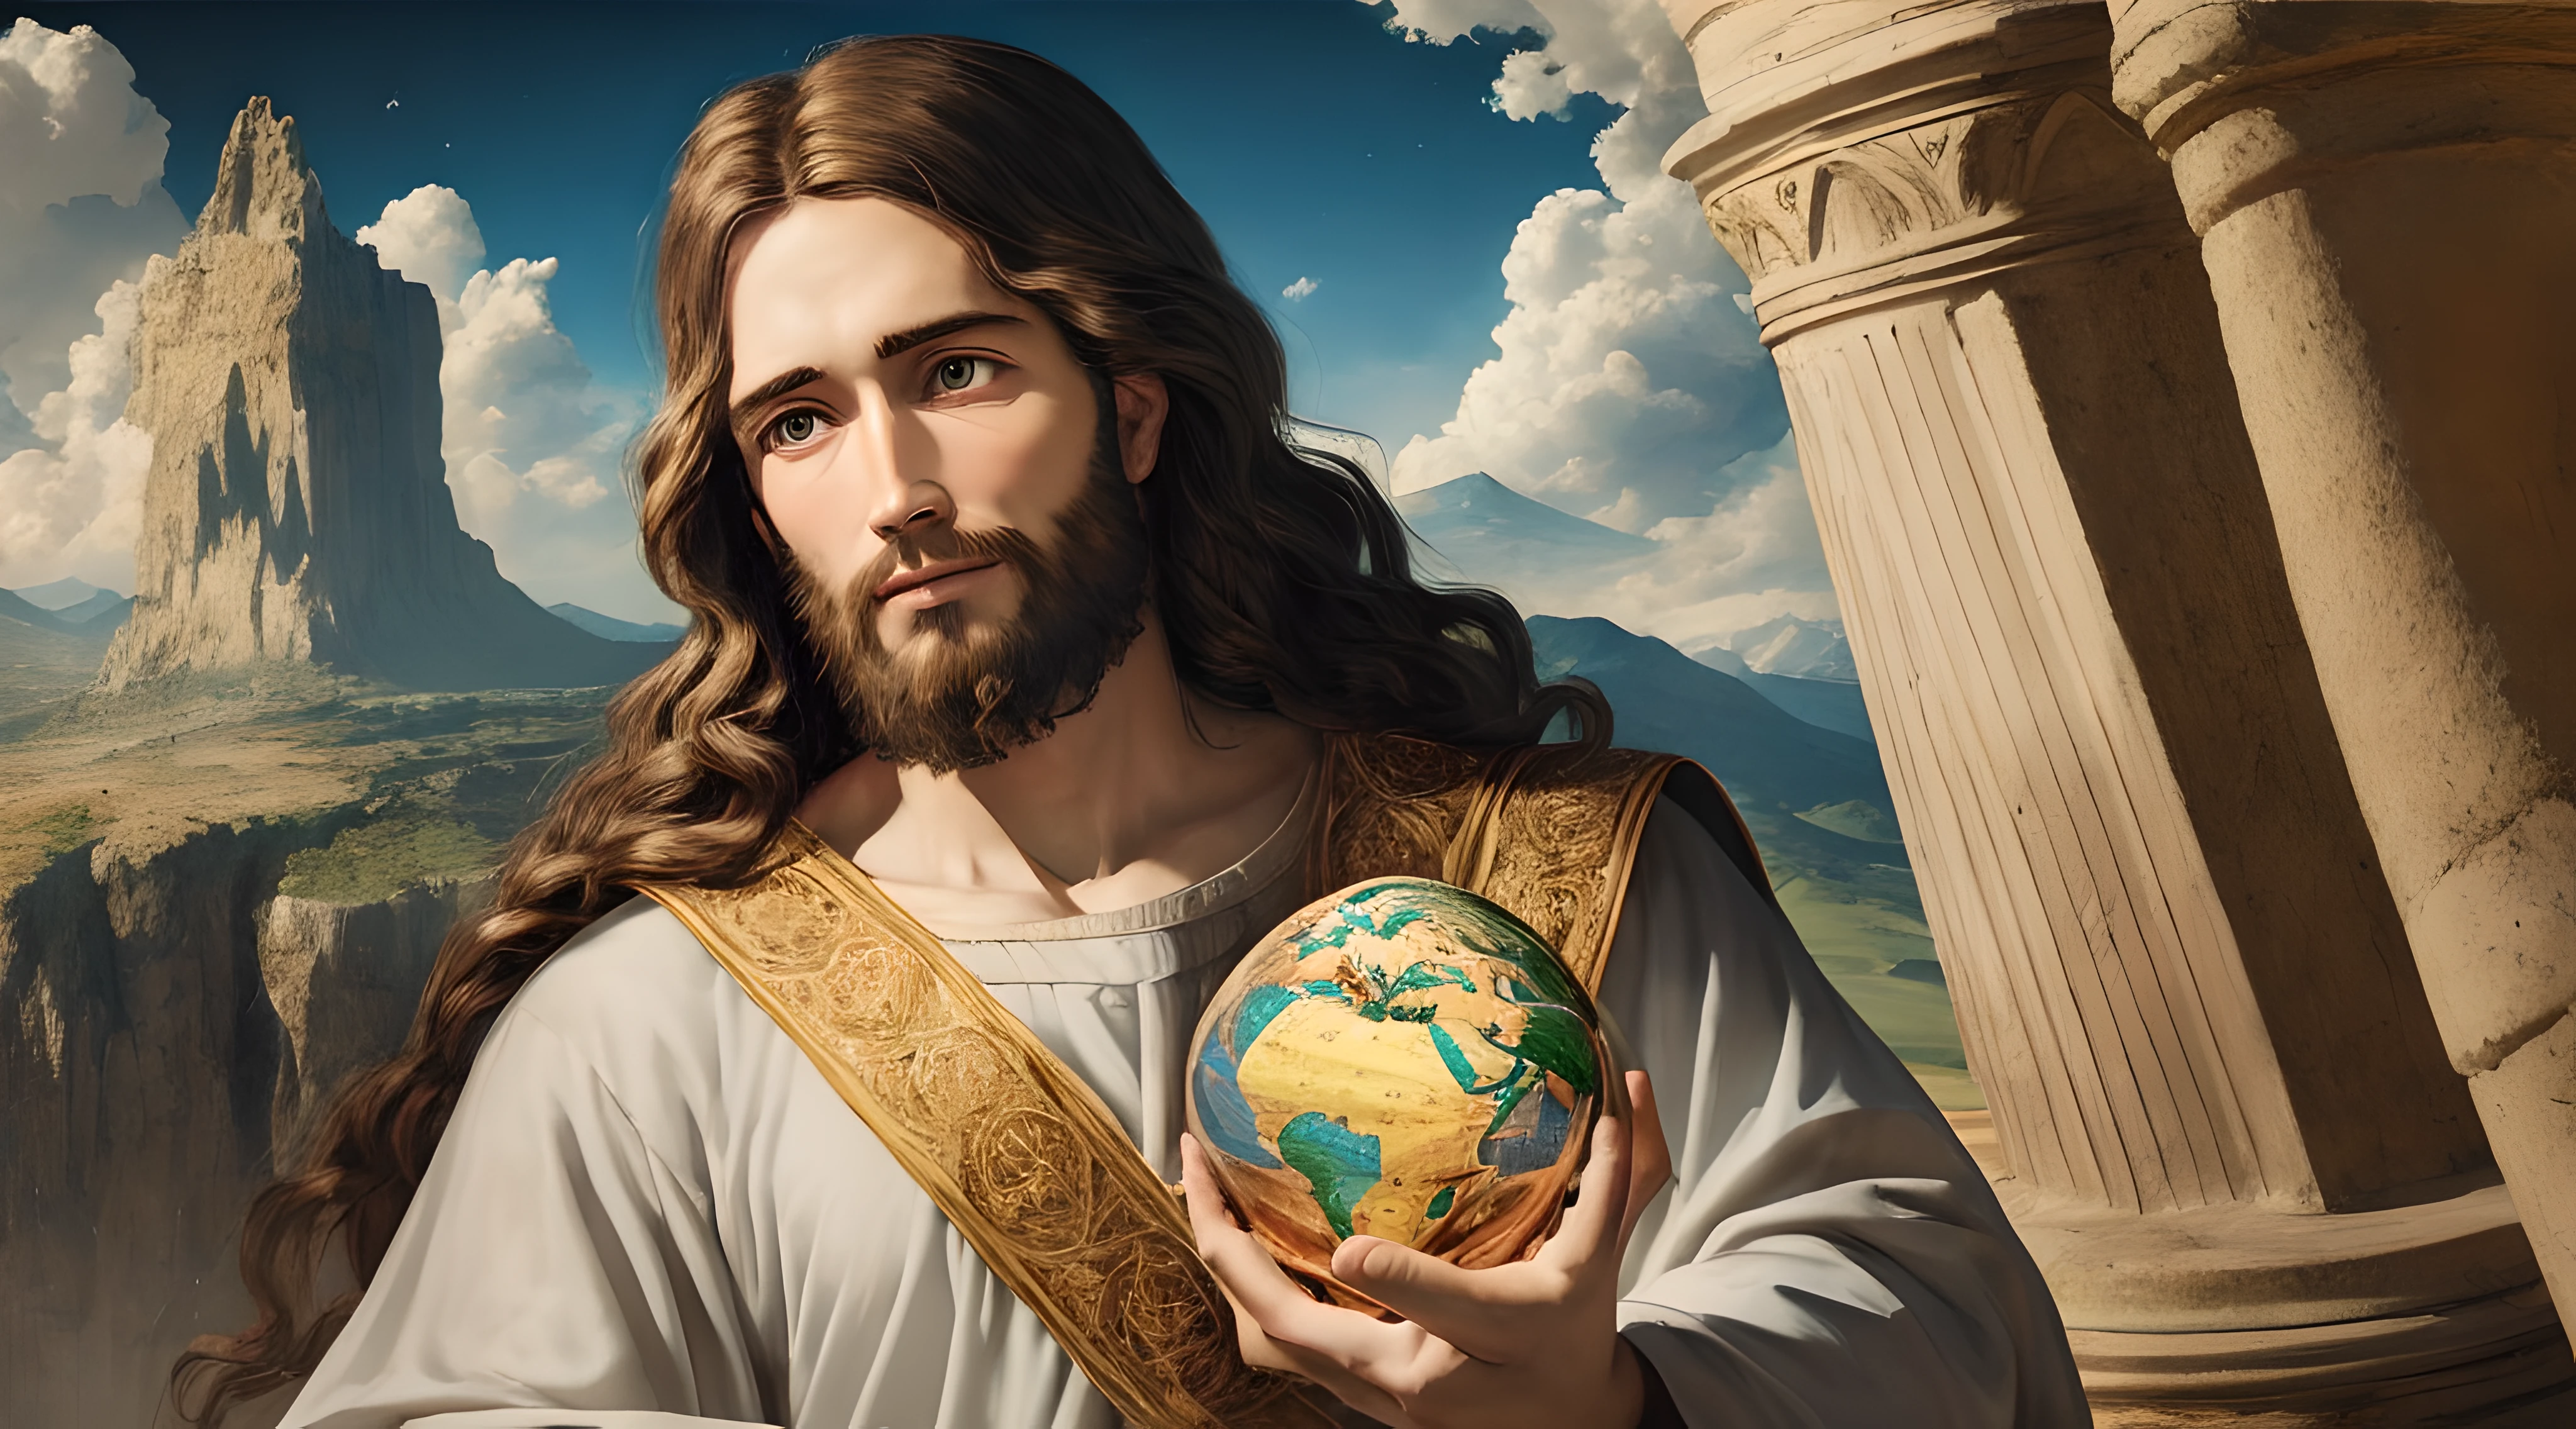 Realistisches 8k-Meisterwerk mit perfekter Anatomie: Jesus Christus hält den Planeten Erde in einer Hand, mit einem unverformten Gesicht